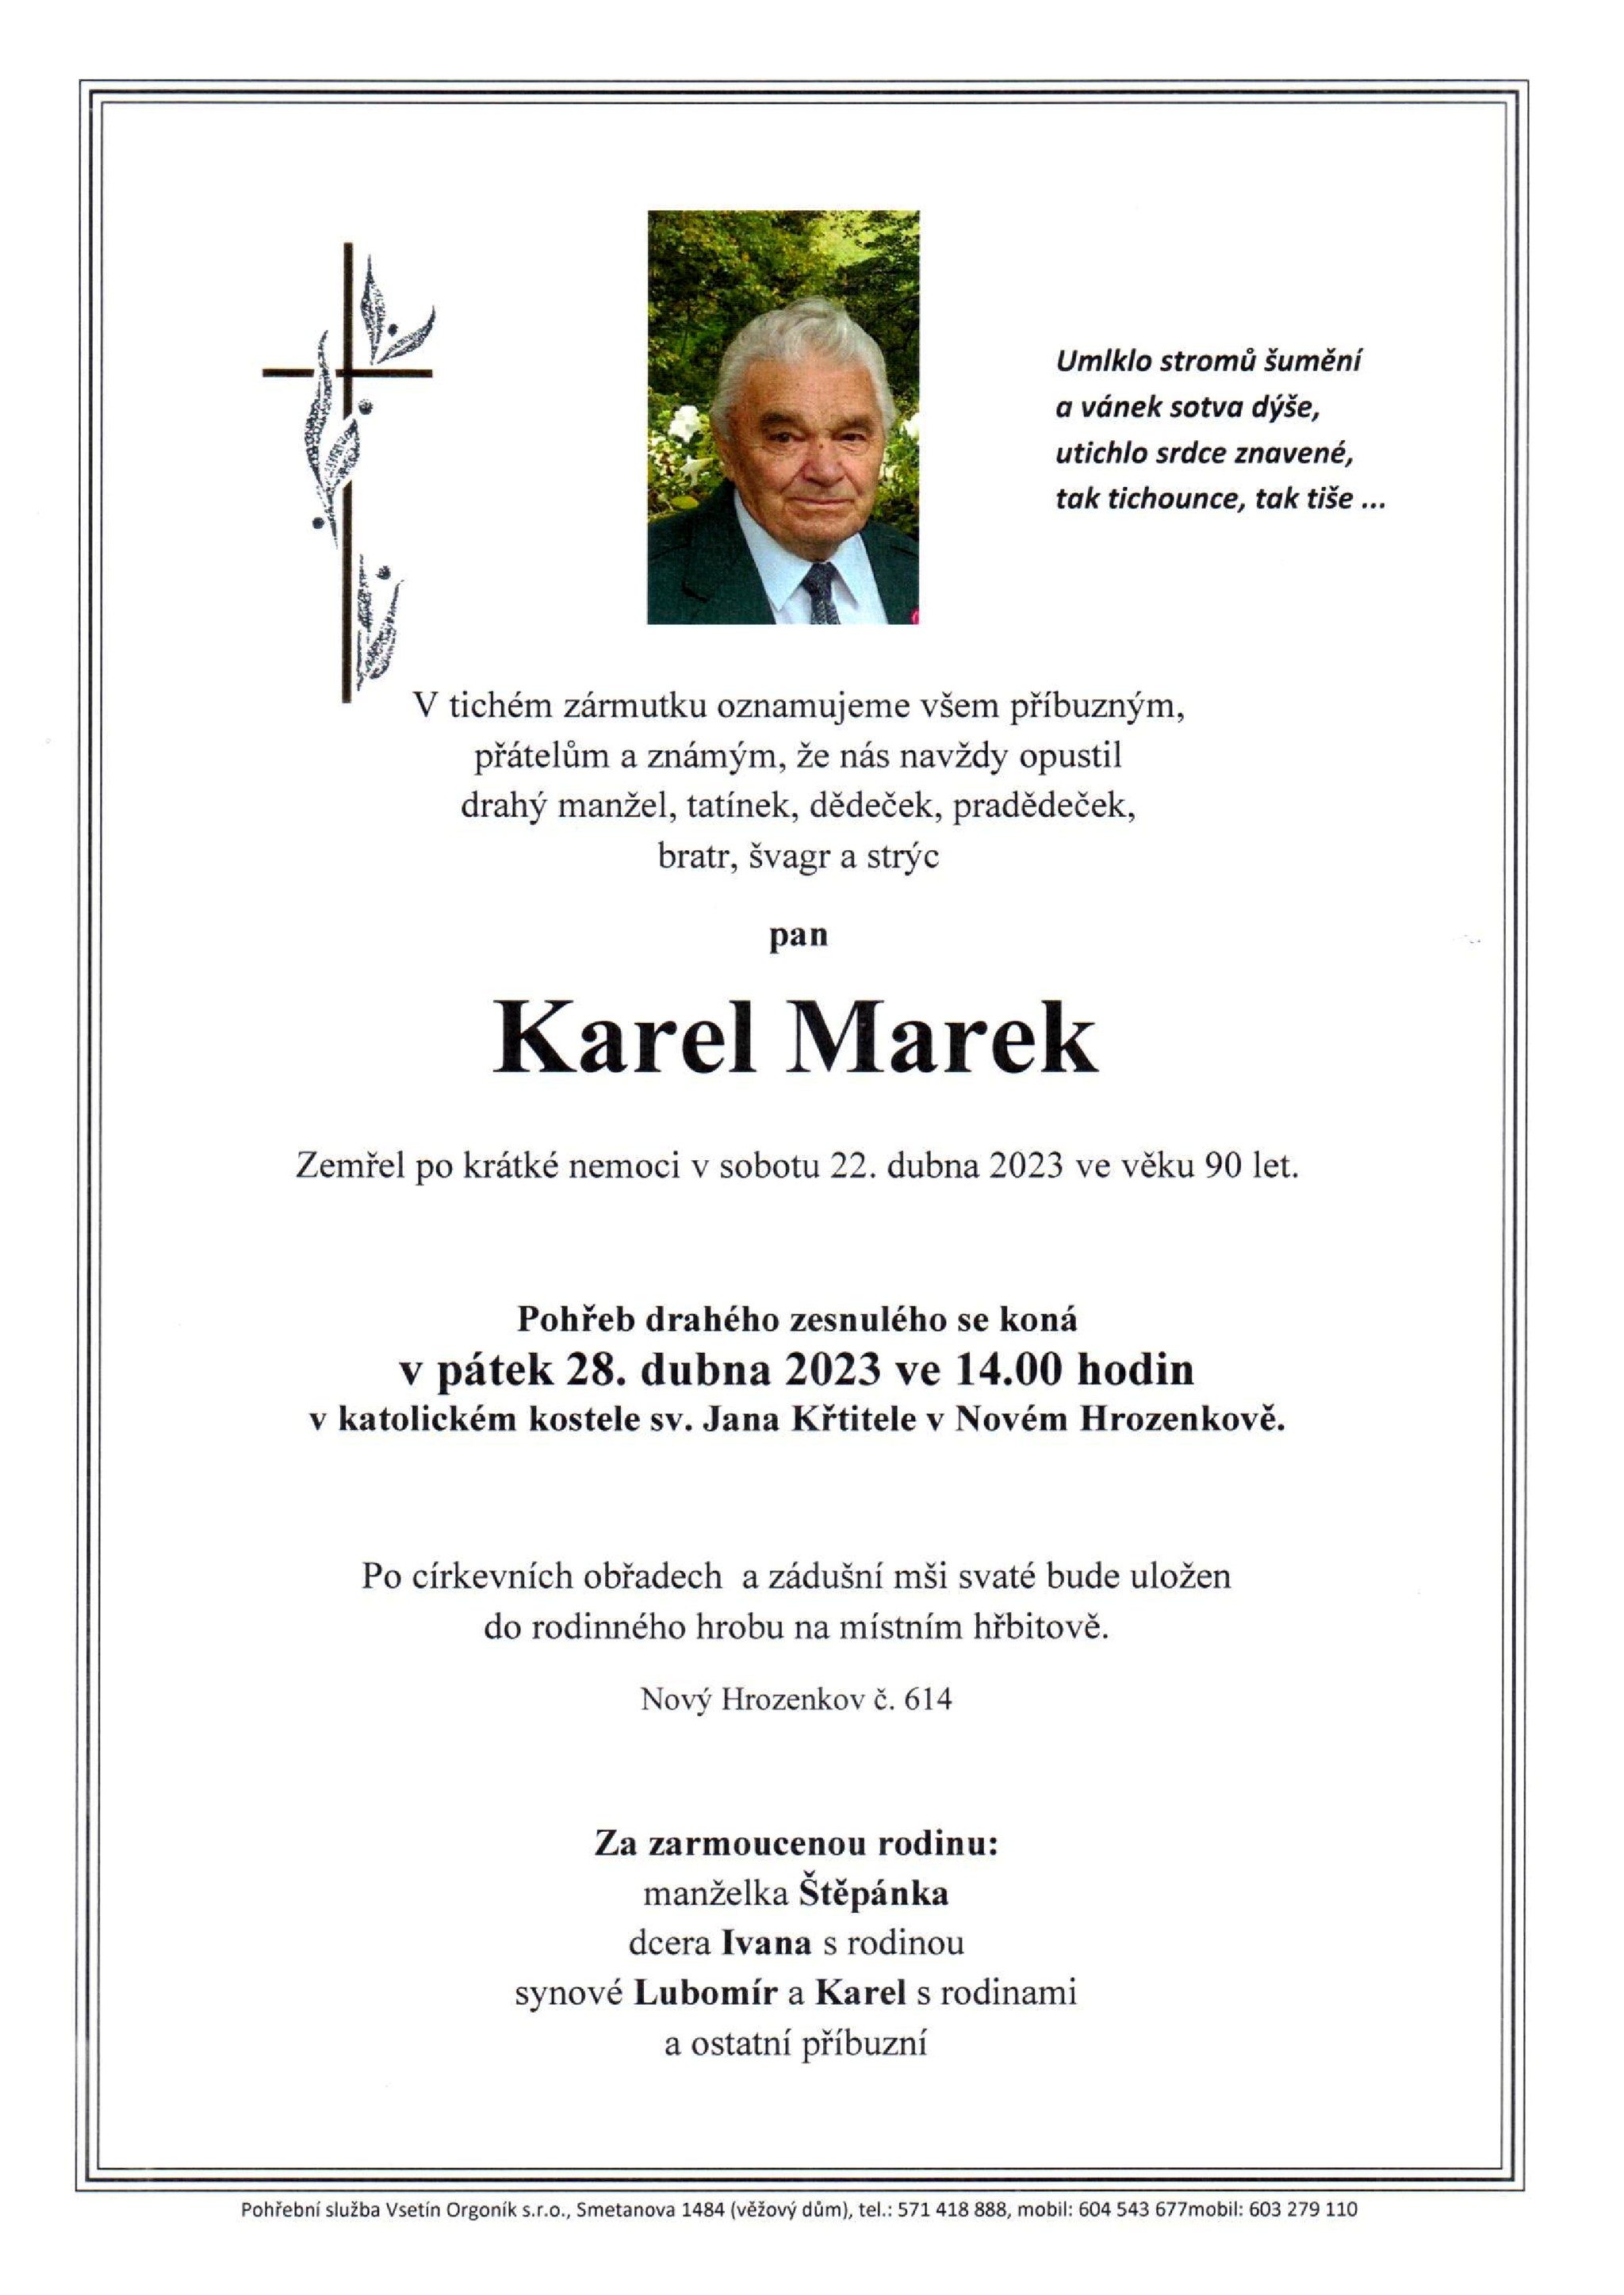 Karel Marek